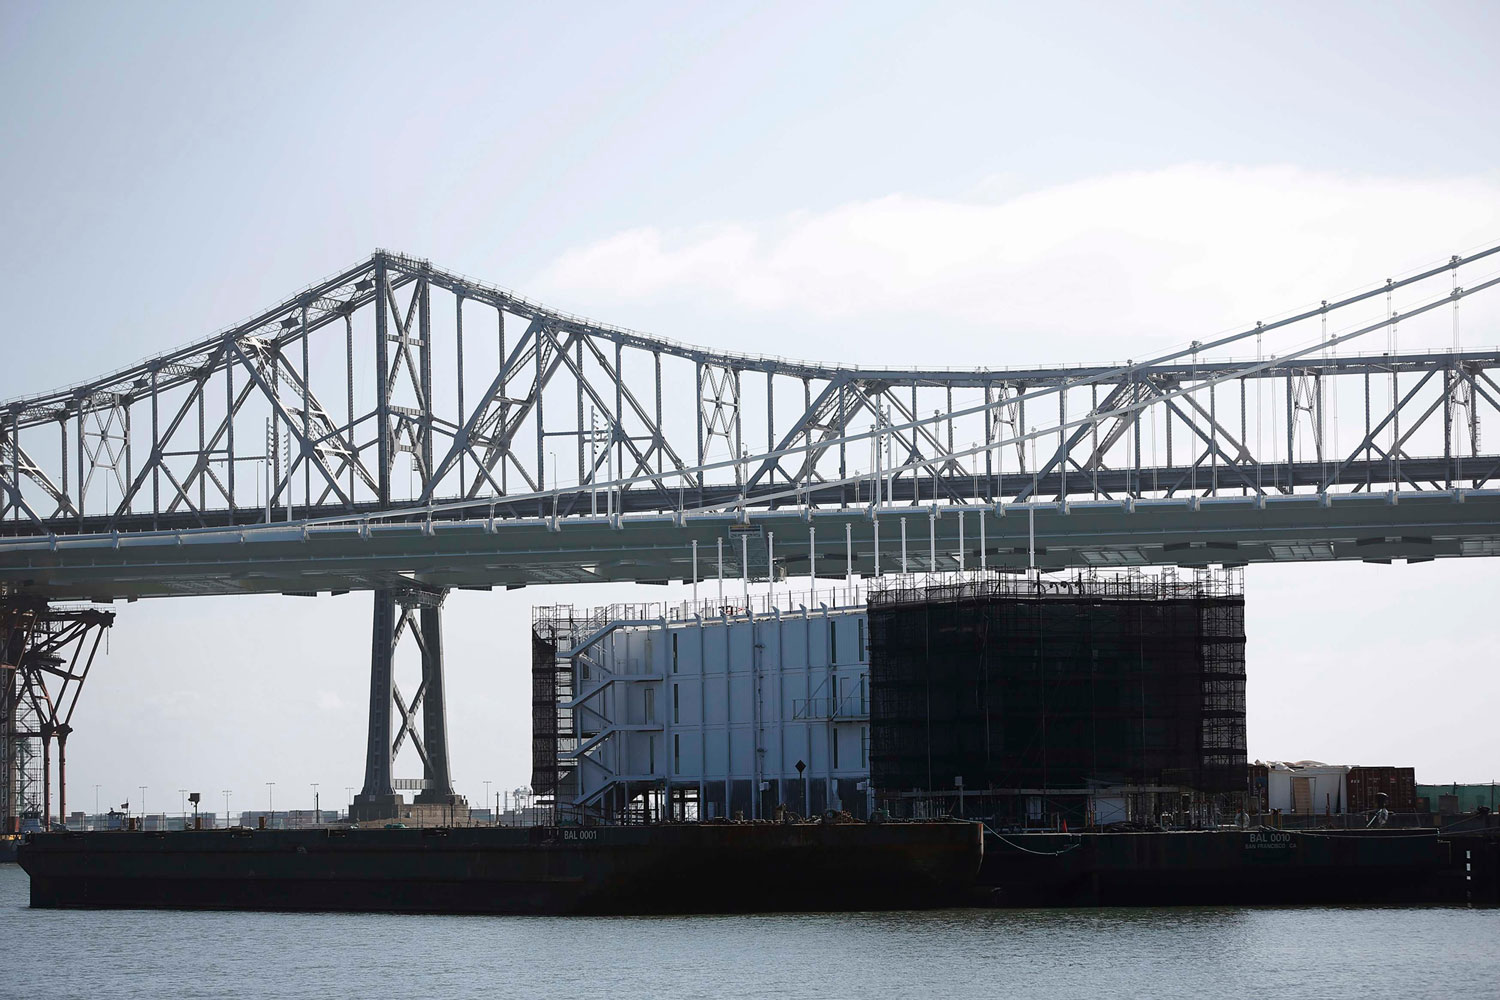 Una estructura flotante en San Francisco crea un misterio acerca de lo que Google planea con ello